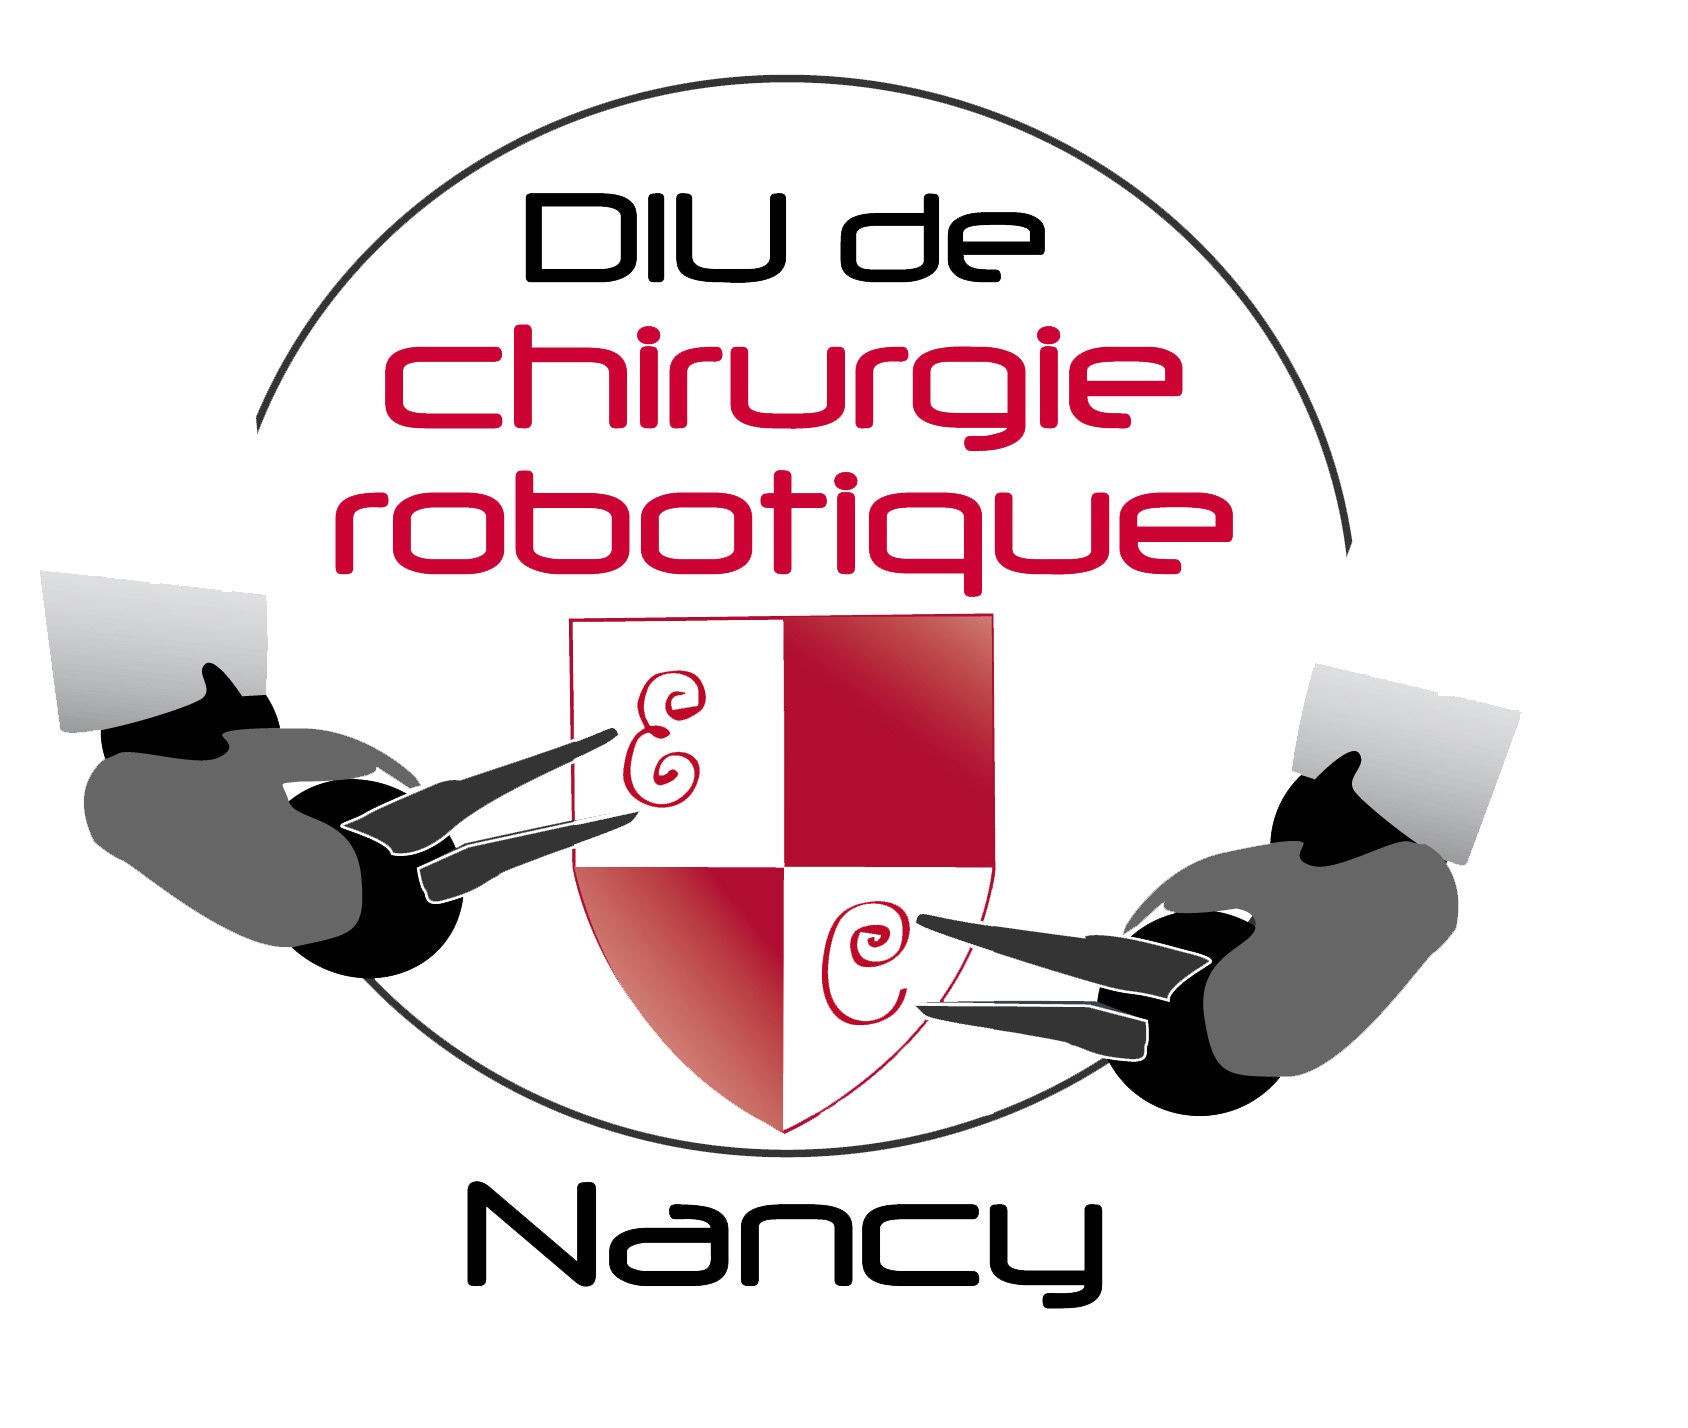 DIU de chirurgie robotique Nancy 2012 : présent et avenir du robot